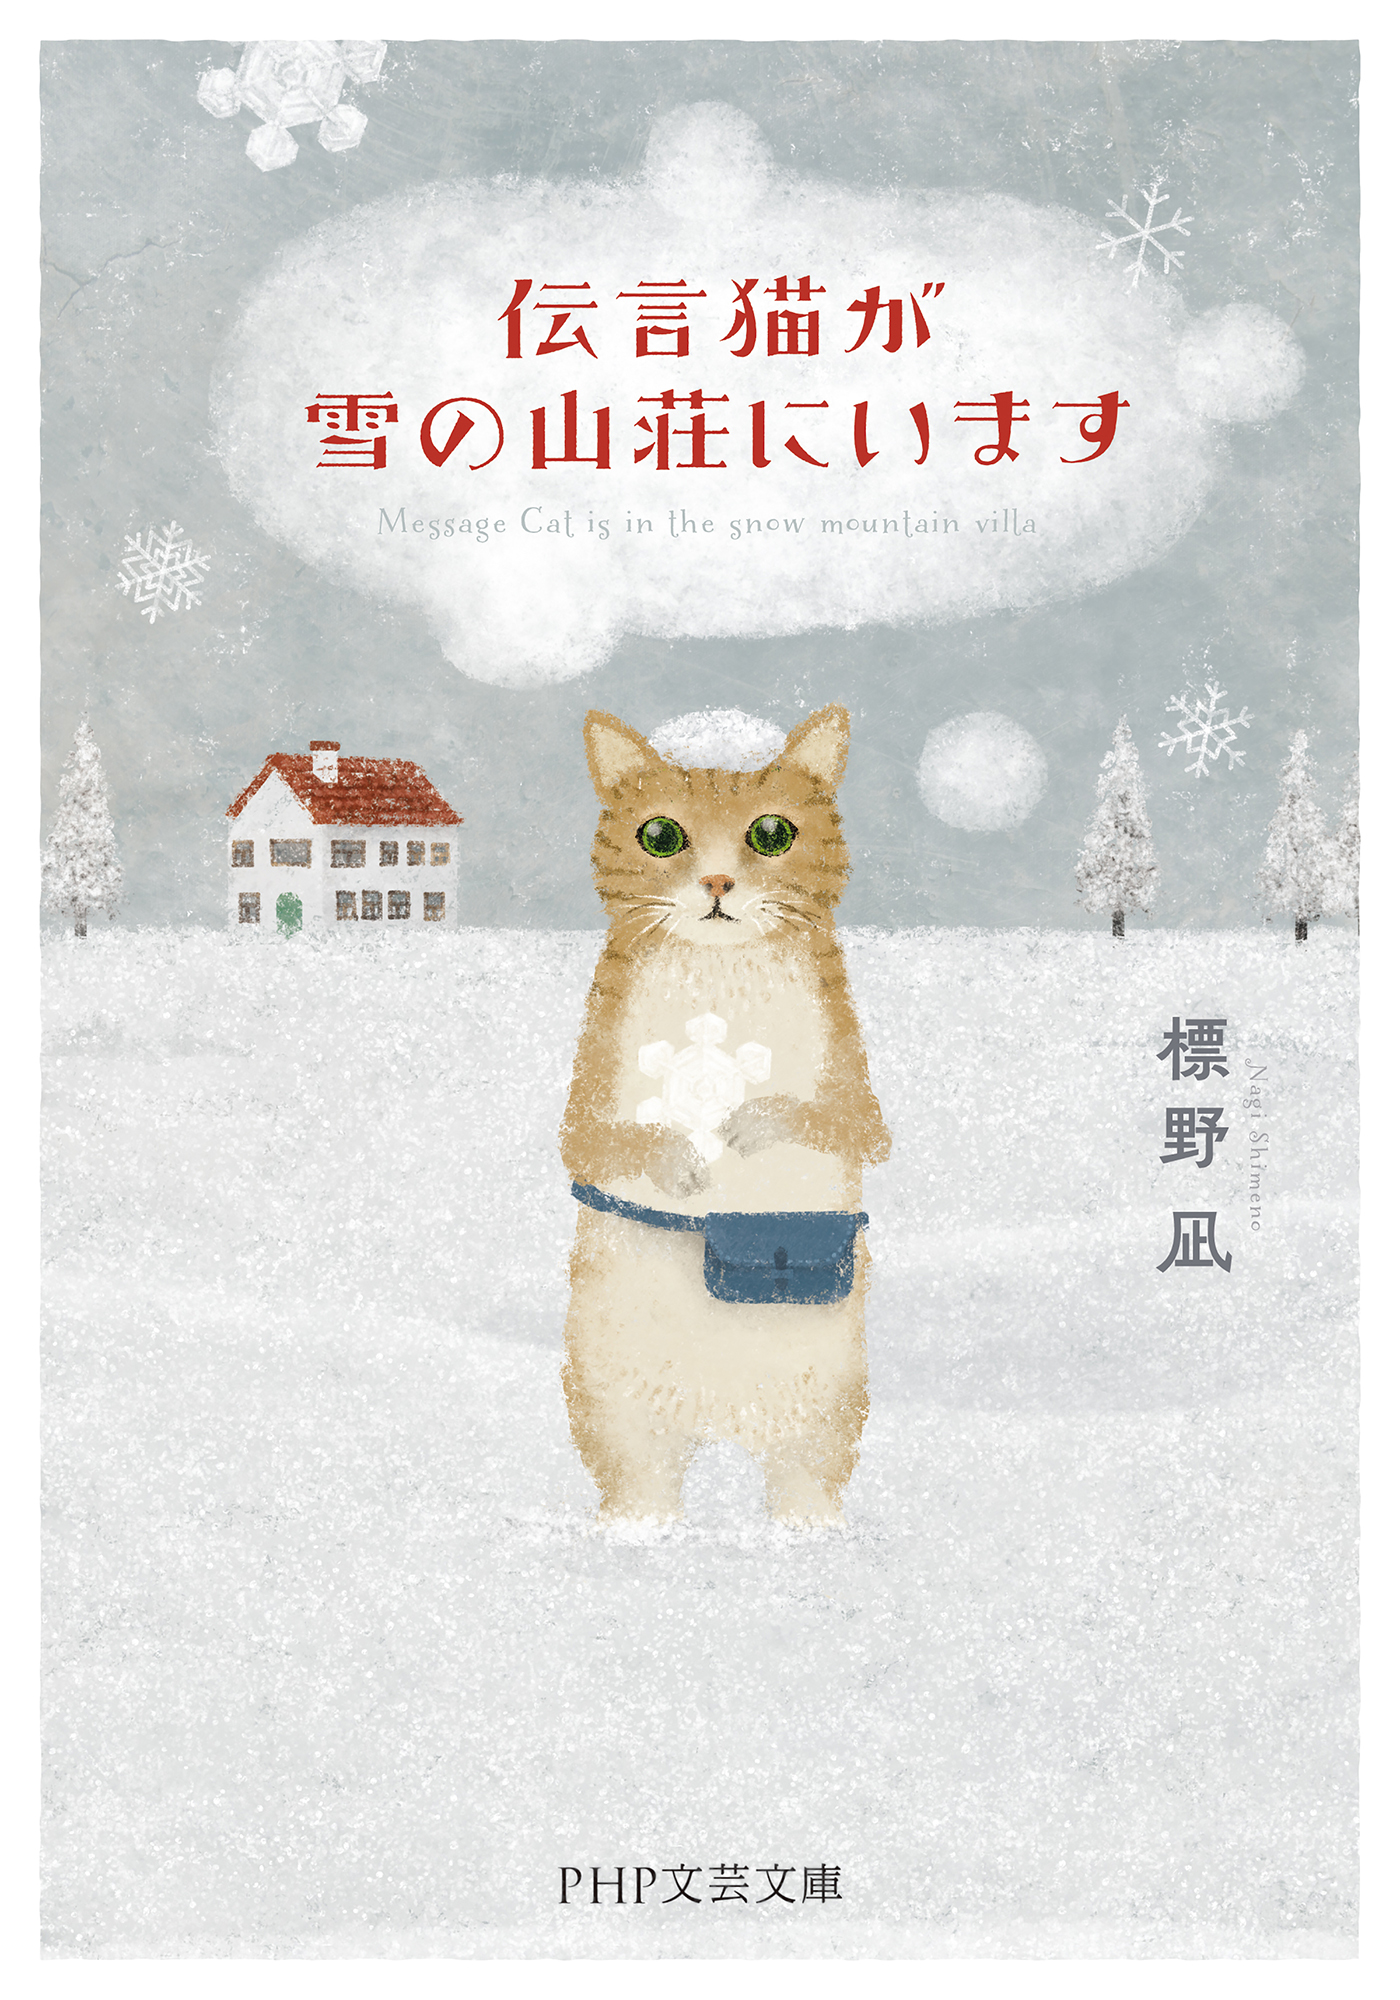 伝言猫が雪の山荘にいます - 標野凪 - 漫画・ラノベ（小説）・無料試し ...